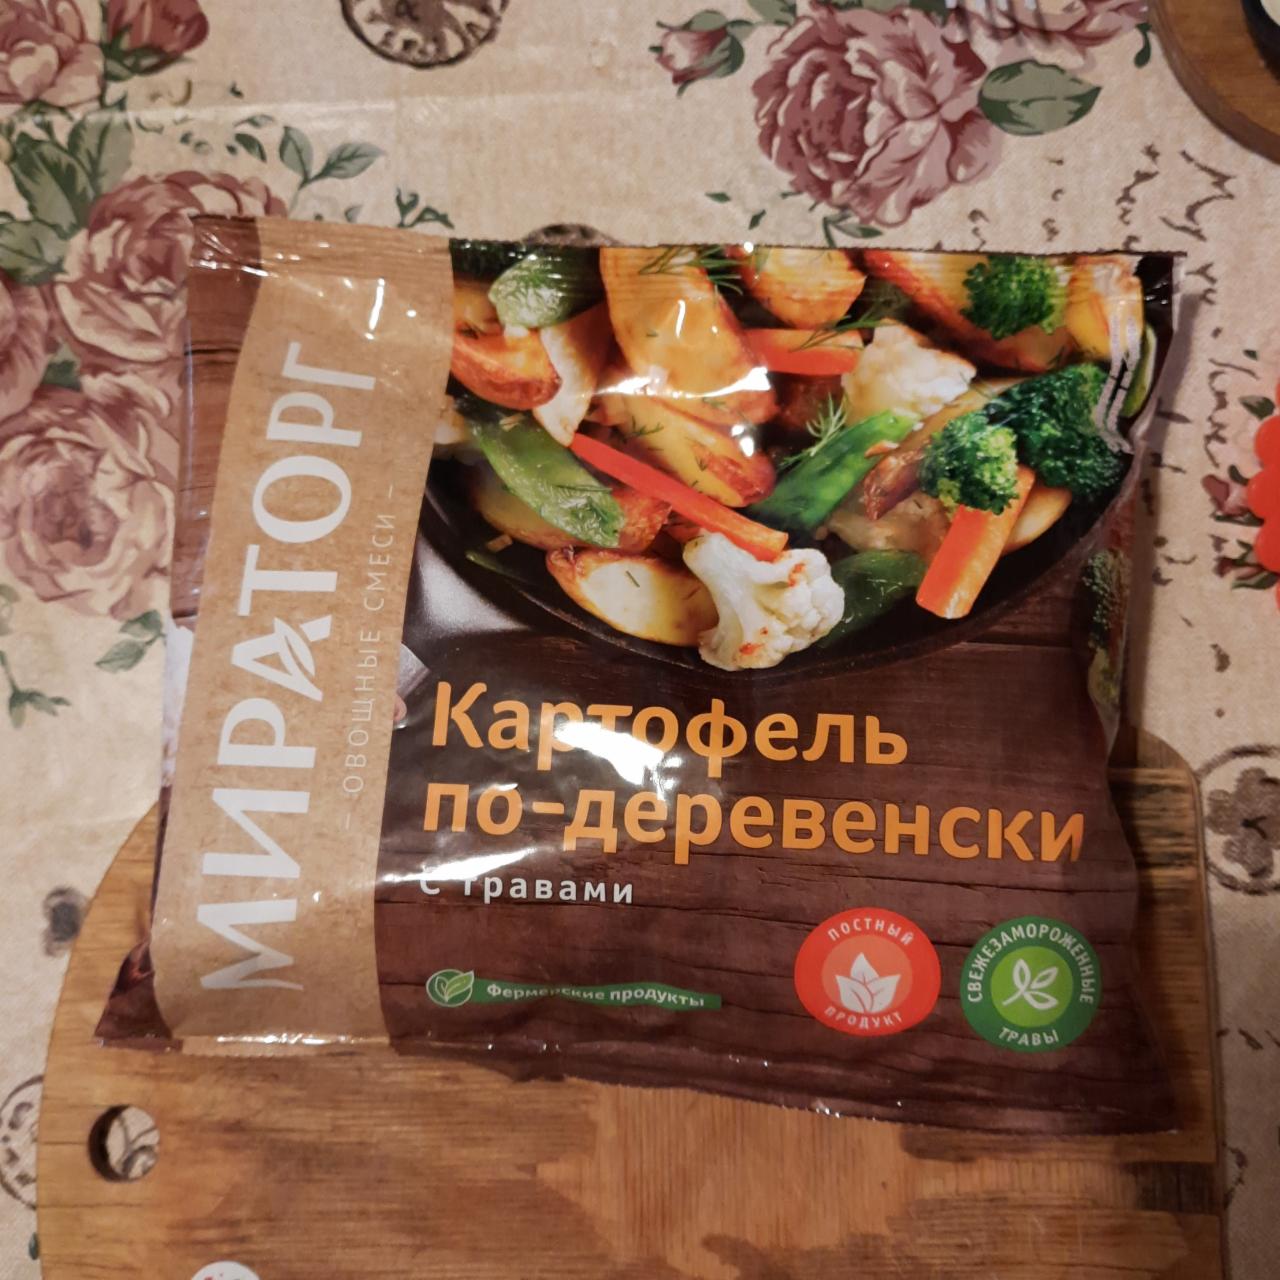 Фото - Овощная смесь Картофель по-деревенски Мираторг